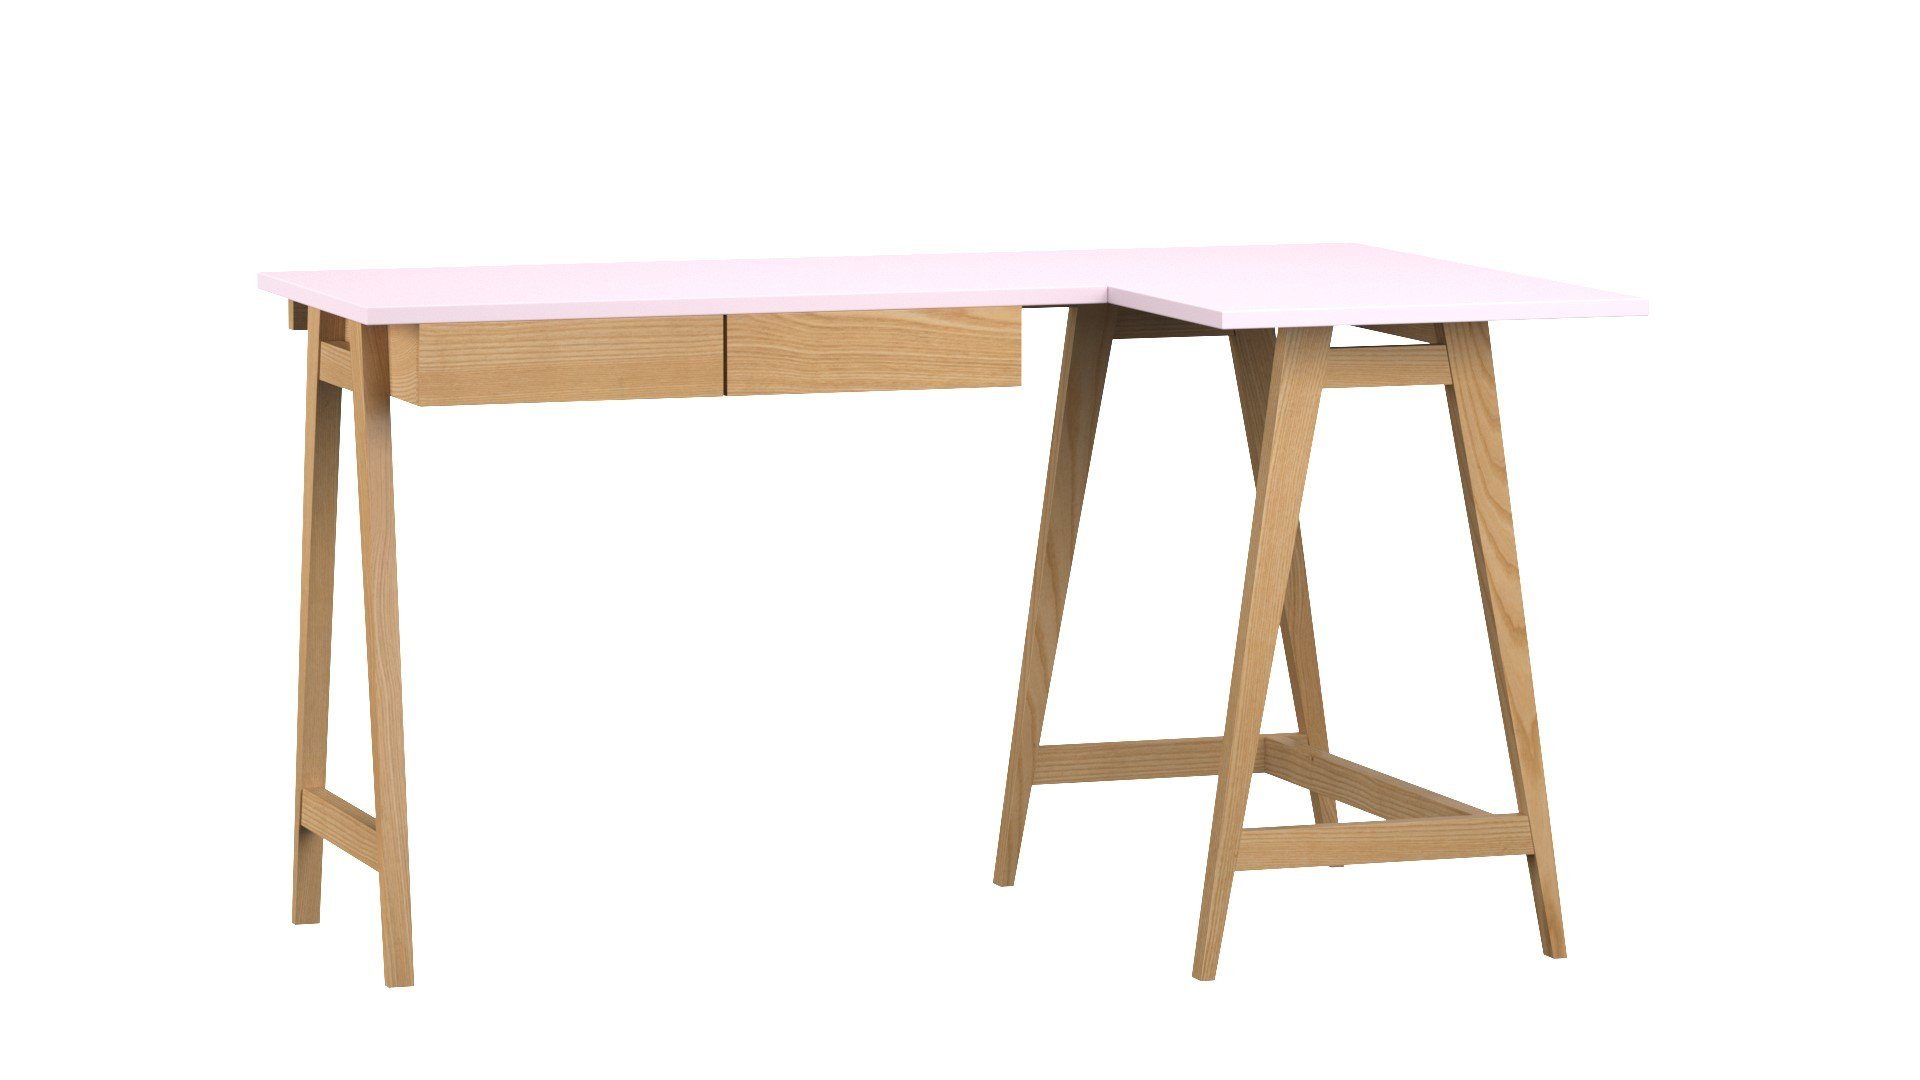 Siblo Schreibtisch Eckschreibtisch Katia mit Schubladen - Moderner Schreibtisch - minimalistisches Design - Kinderzimmer - Jugendzimmer - MDF-Platte - Eschenholz (Eckschreibtisch Katia mit Schubladen) Rosa